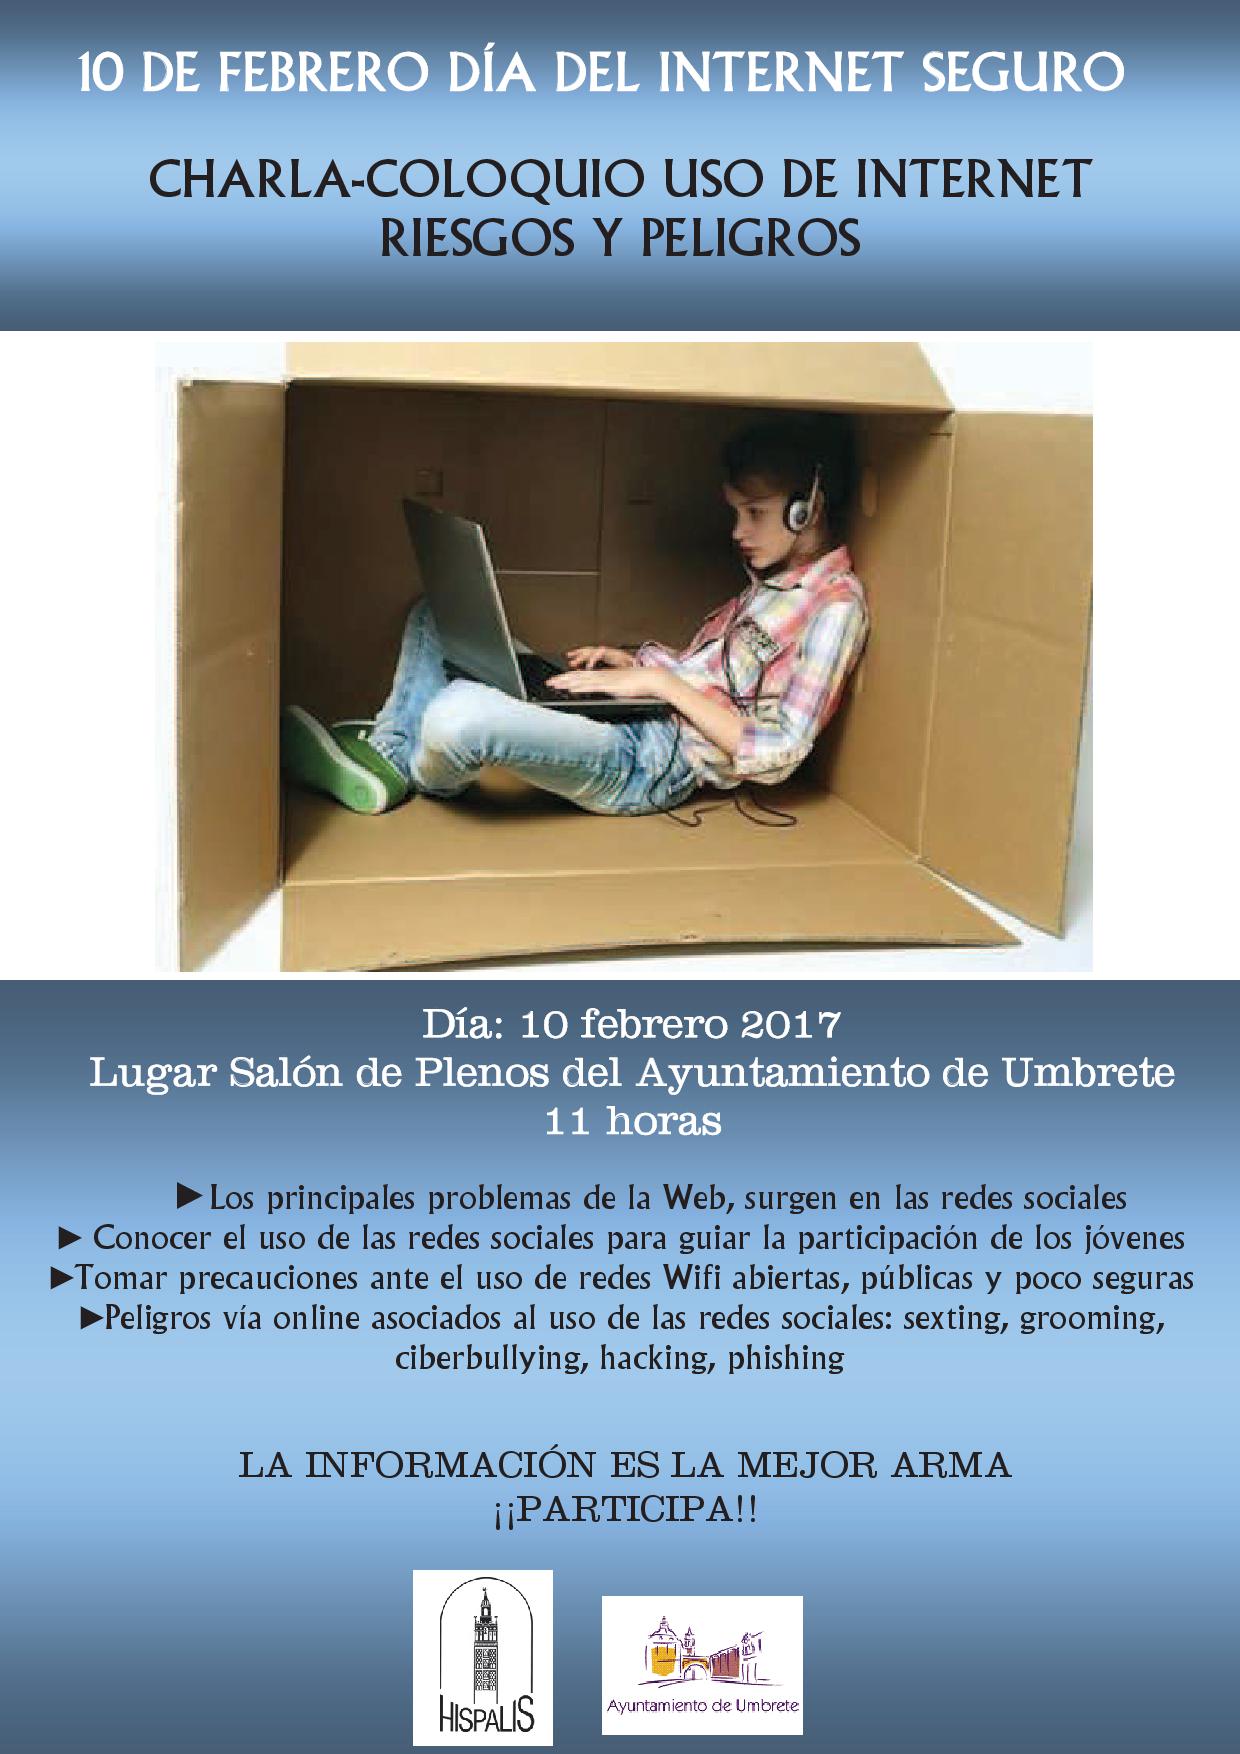 CHARLA-COLOQUIO EL USO DE INTERNET, RIESGOS Y